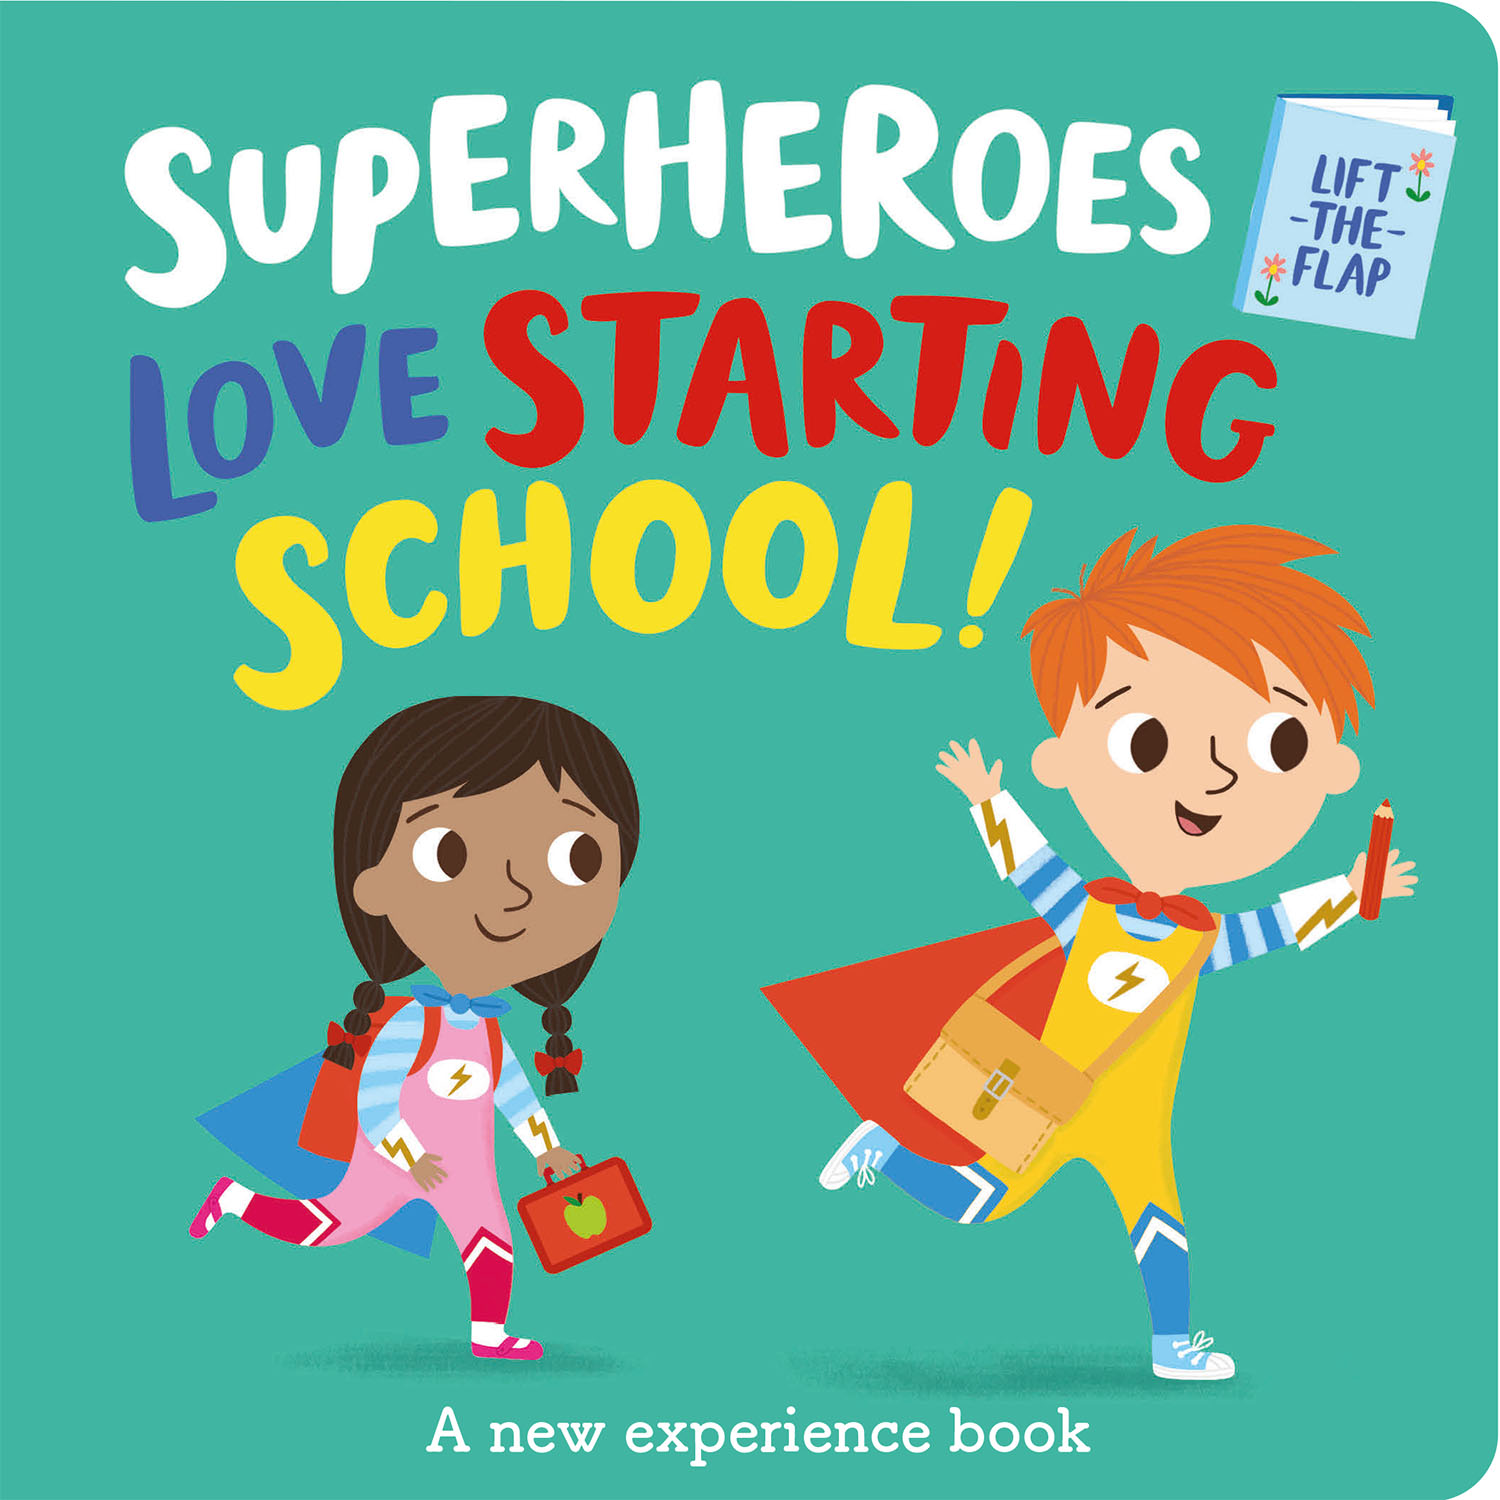 SUPERHEROES LOVE STARTING SCHOOL!